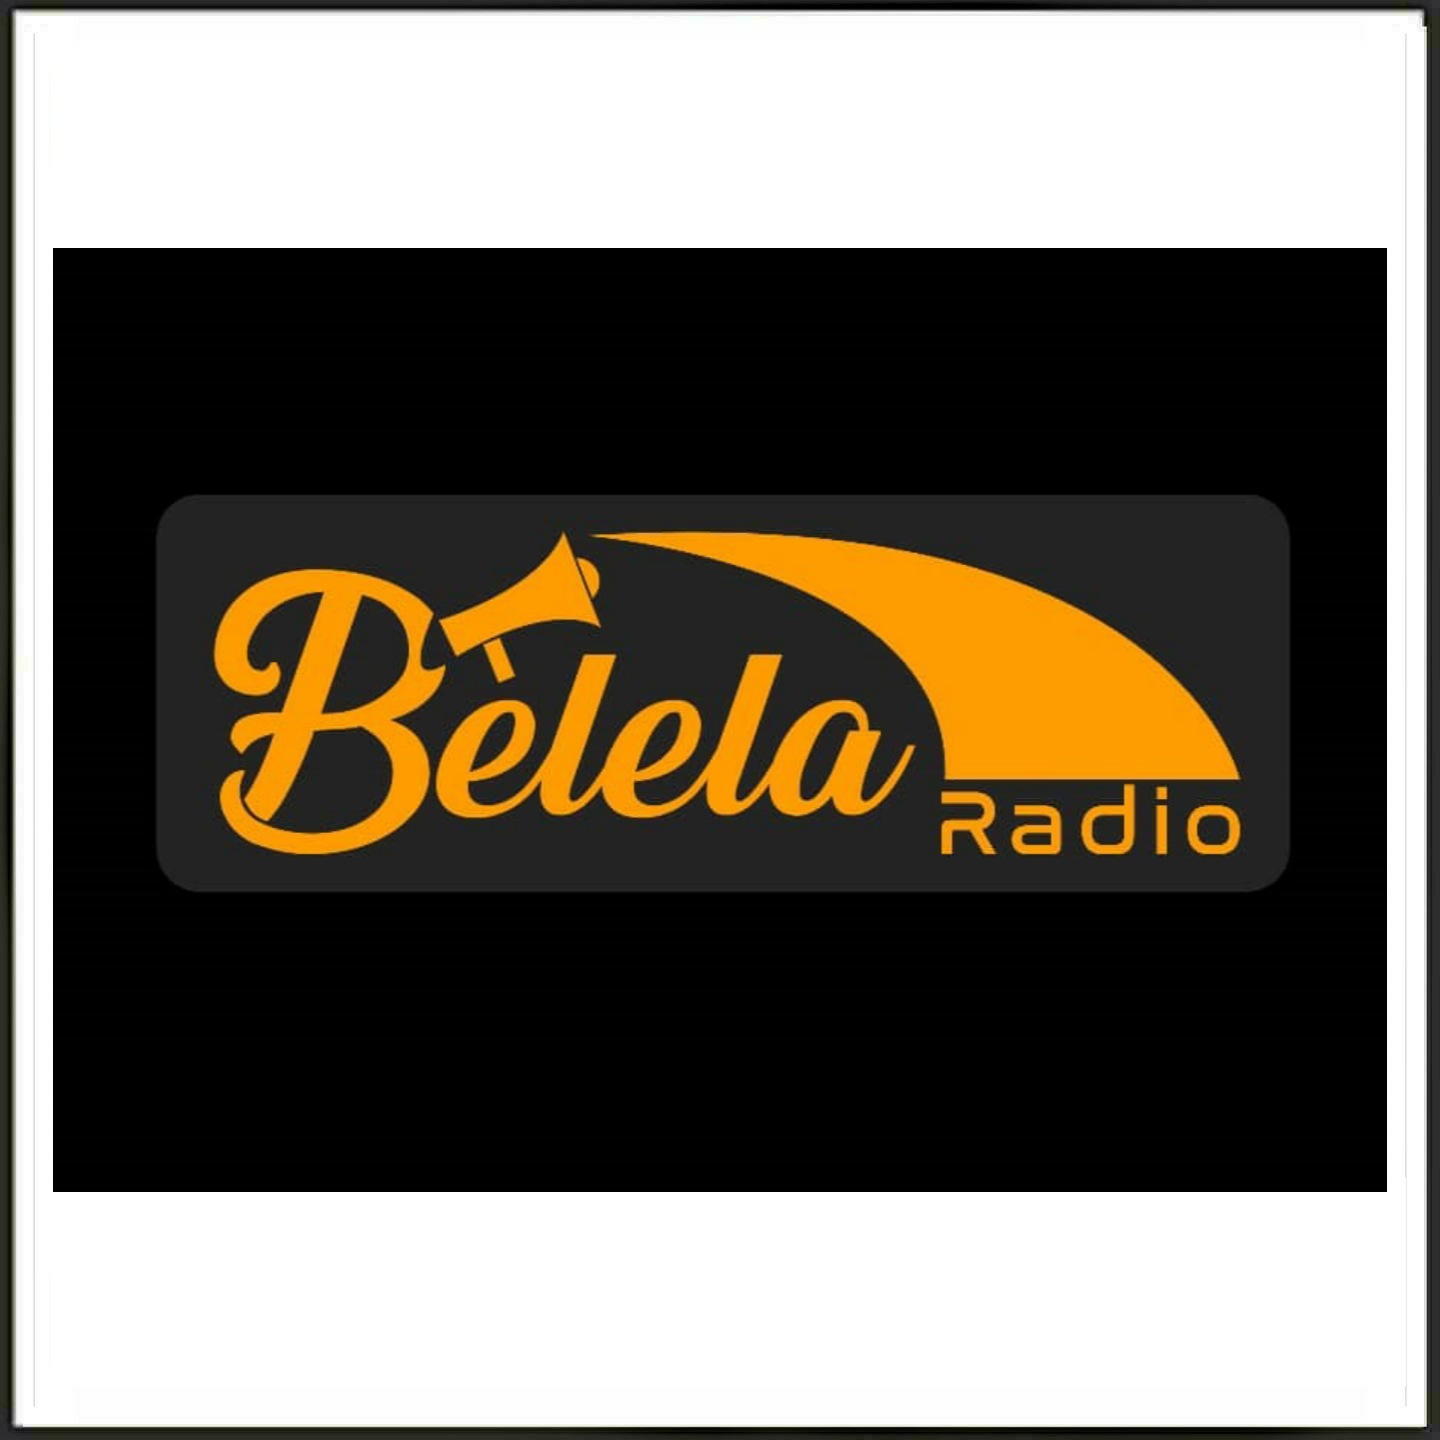 RADIO BELELA